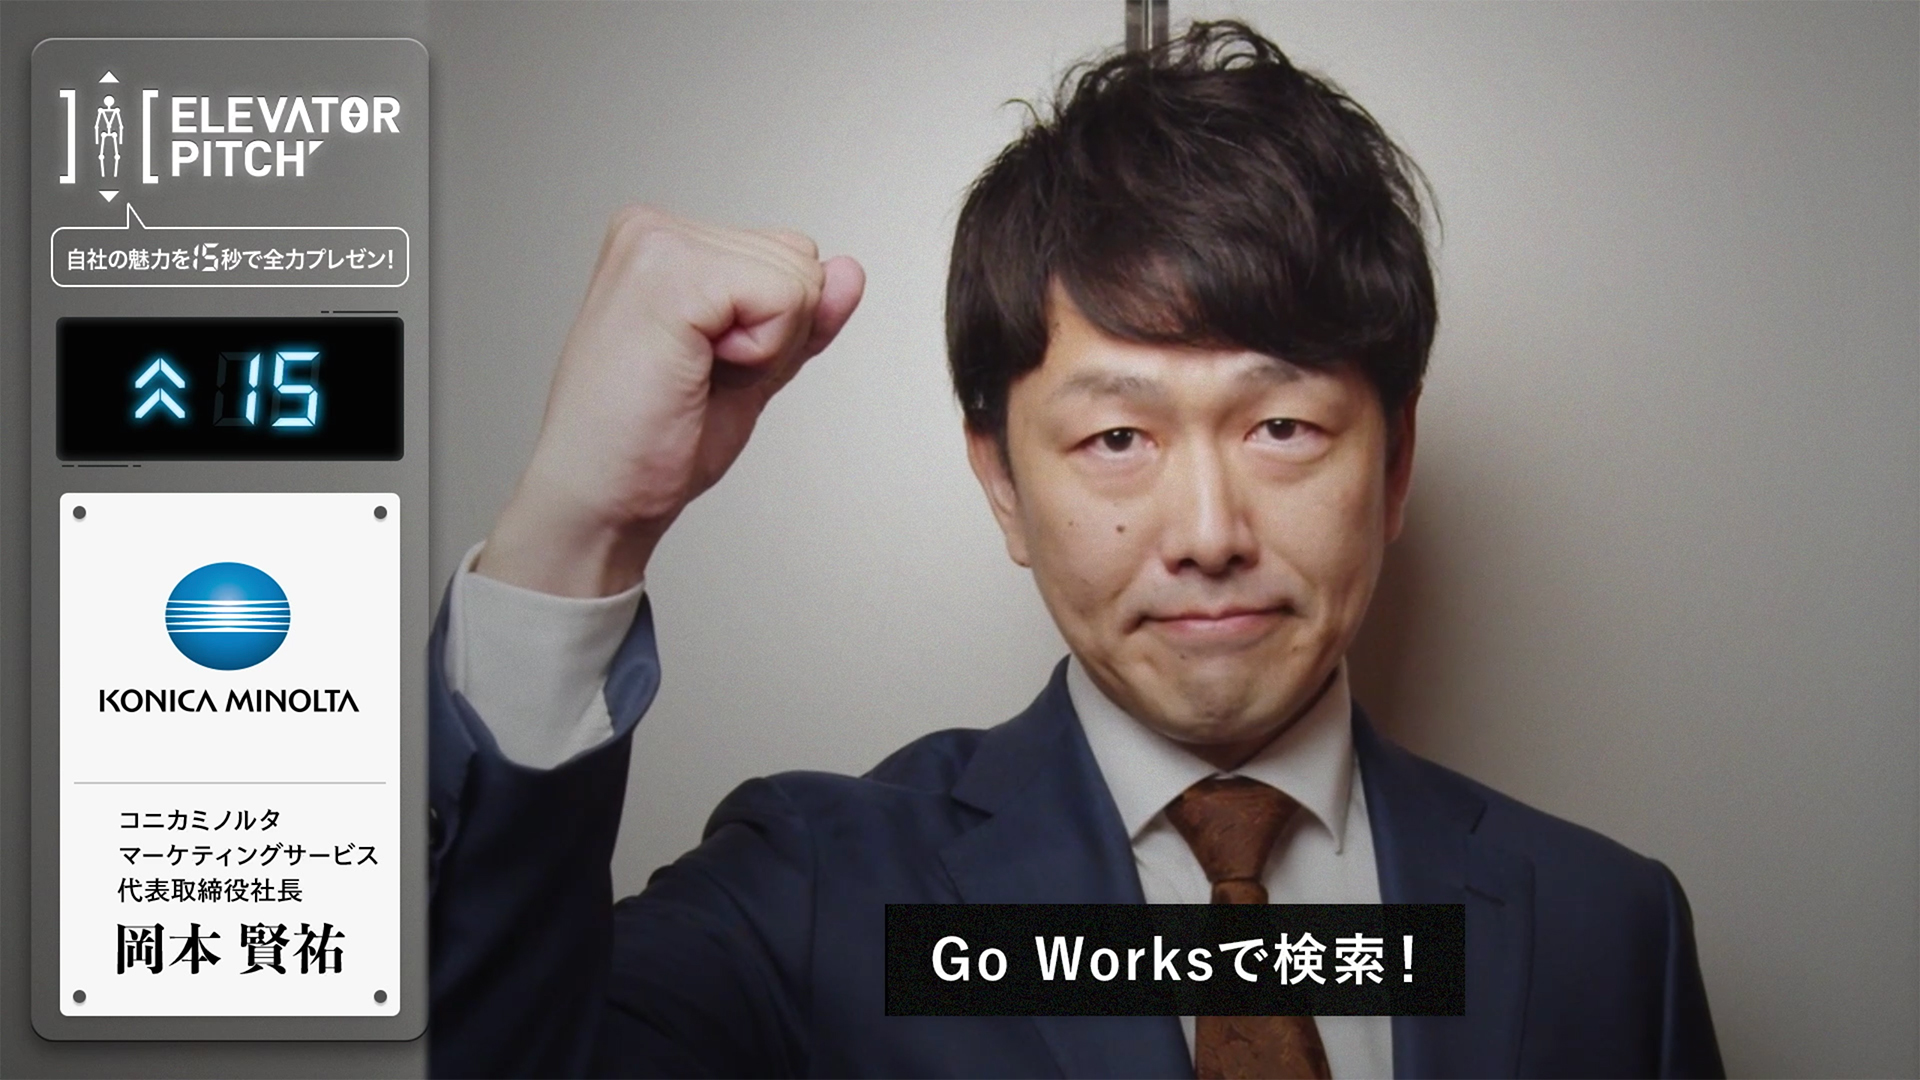 弊社代表の岡本が東京都内最大級のモビリティメディア「GROWTH」の企画『ELEVATER PITCH』に出演いたしました。